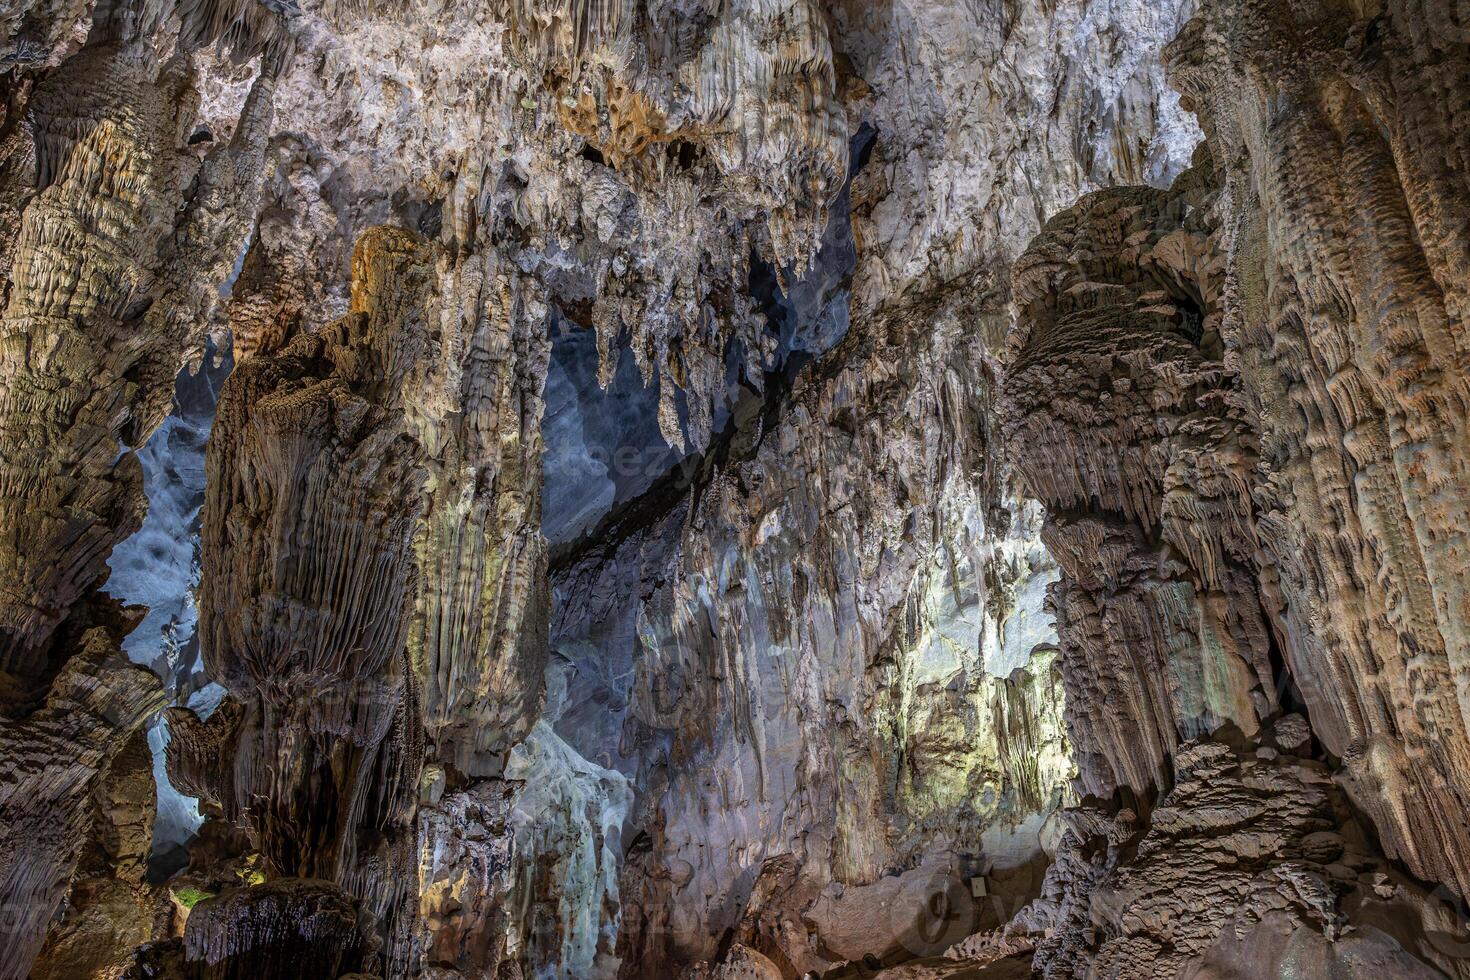 stalagmite e stalattite formazione nel il appendere figlio dong grotta nel Vietnam foto